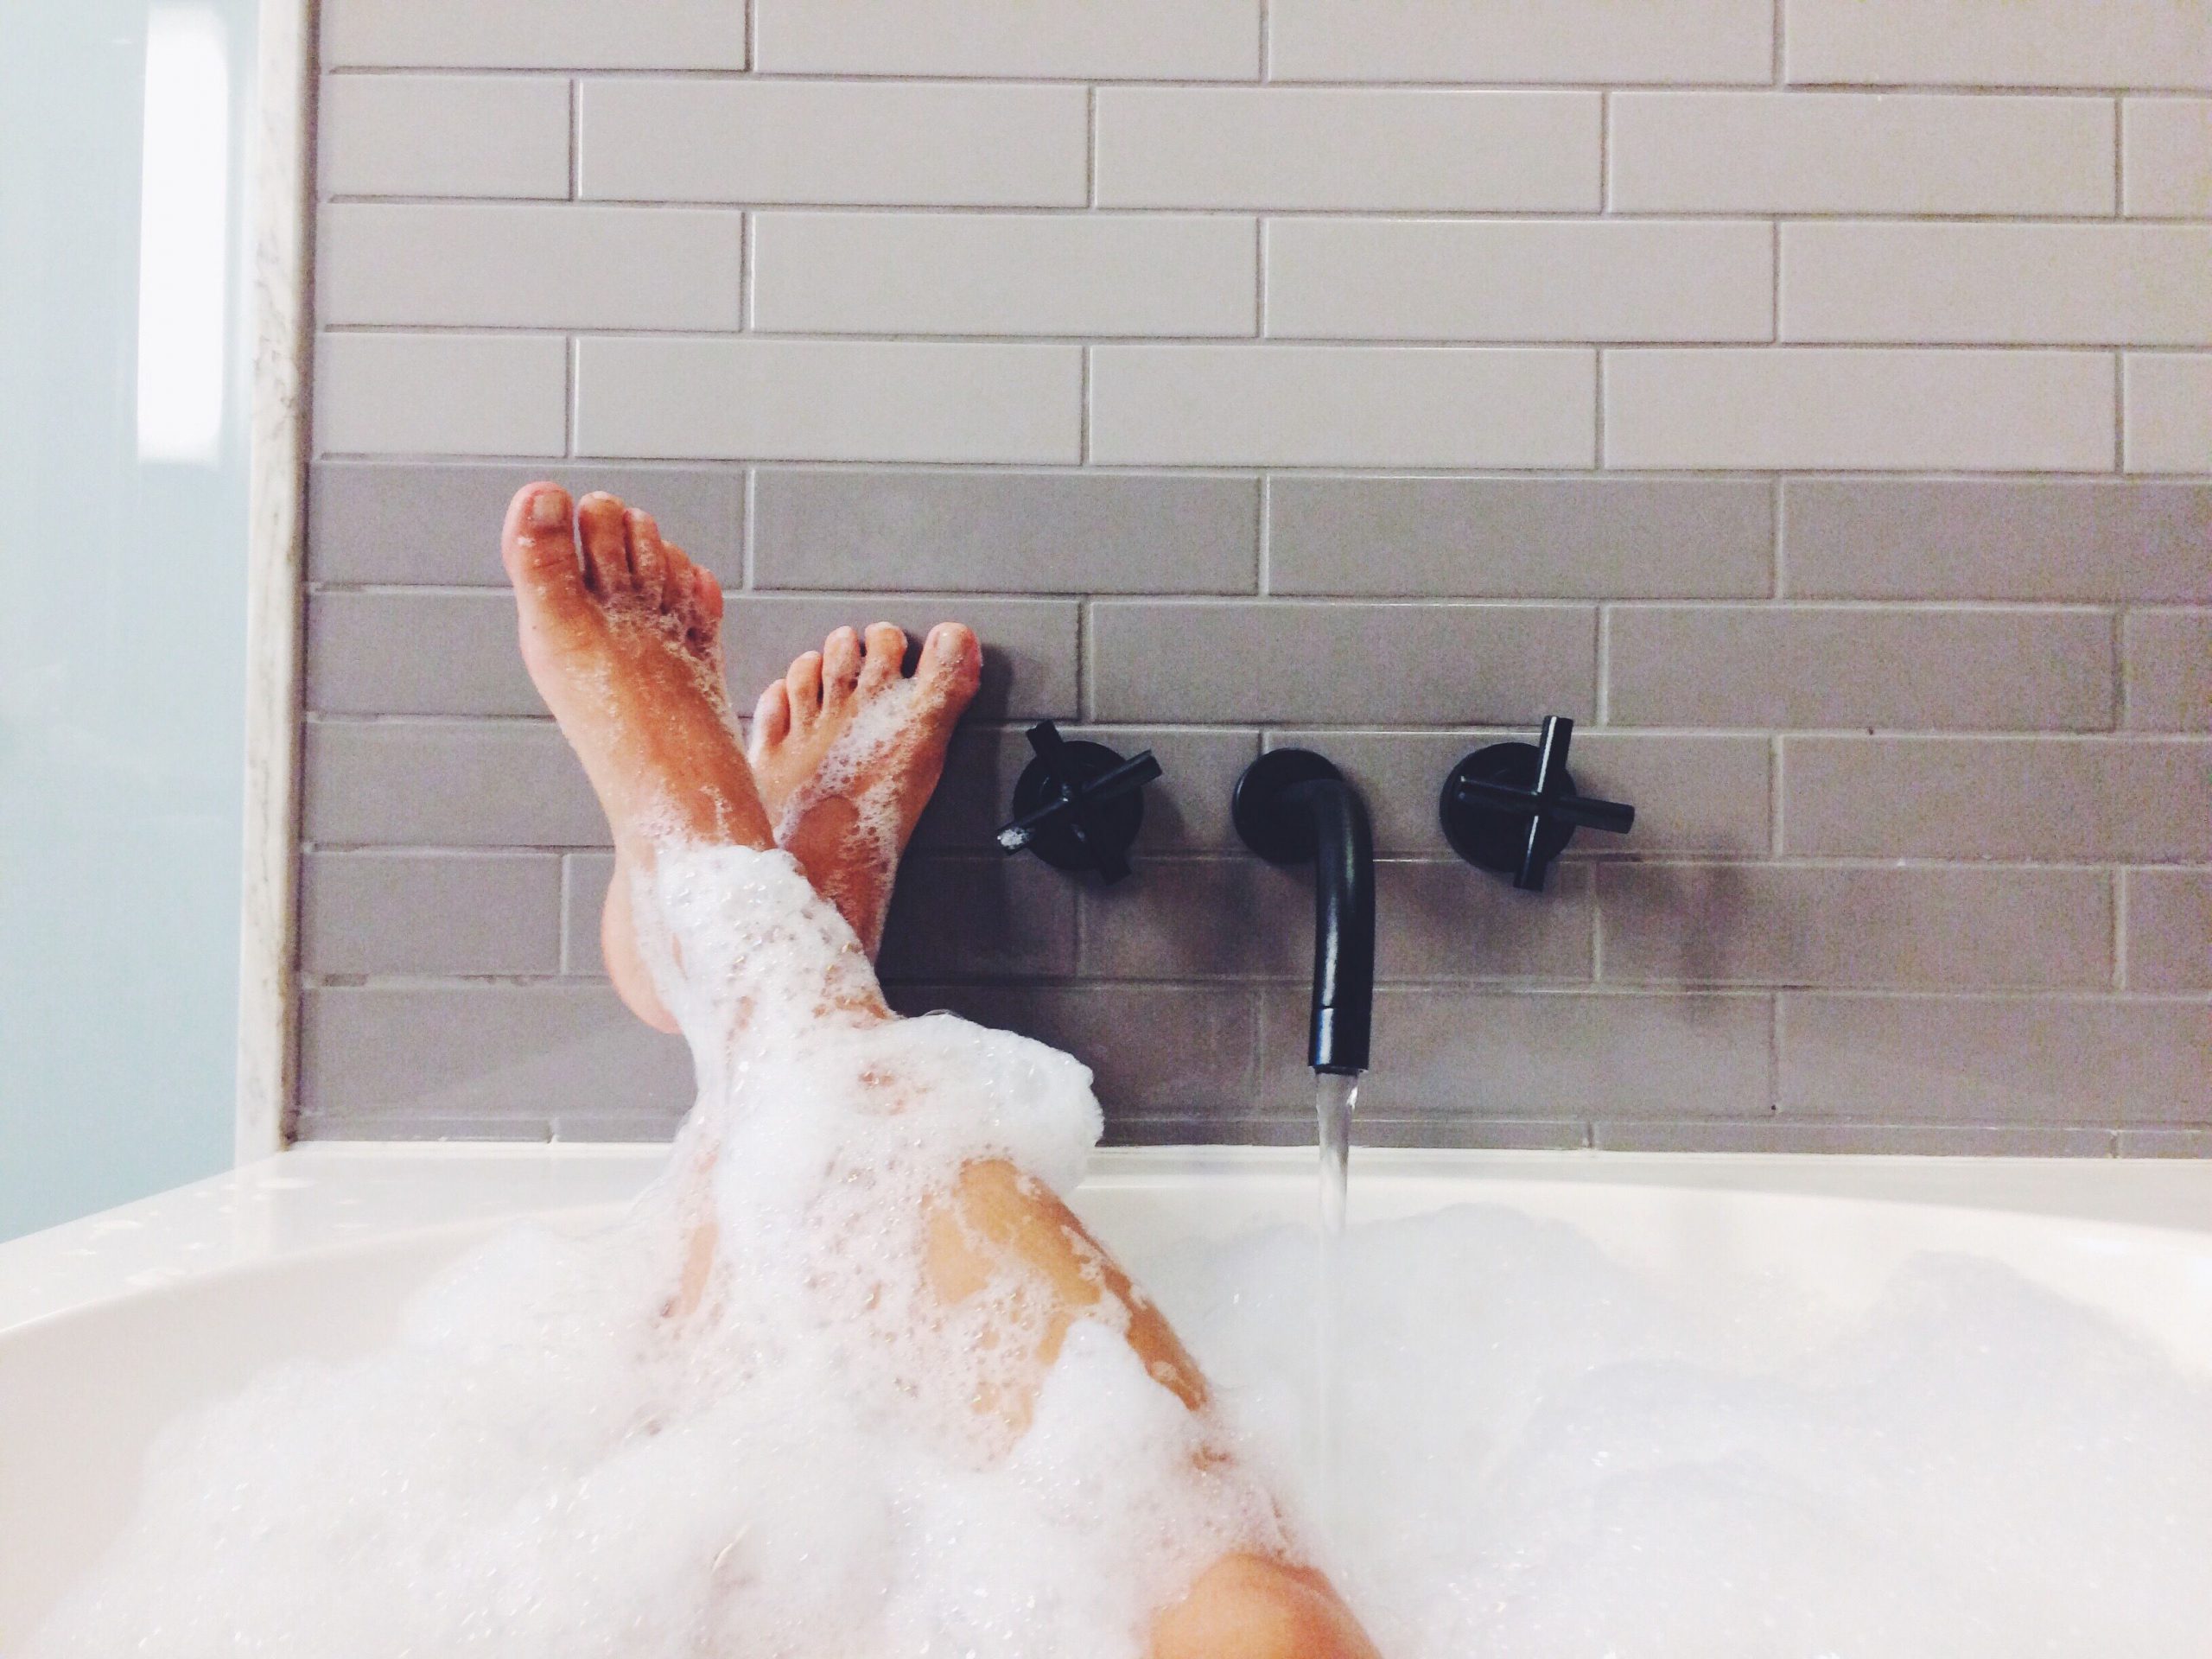 Fim de semana de spa caseiro – linda dos pés à cabeça granas aos tratamentos caseiros